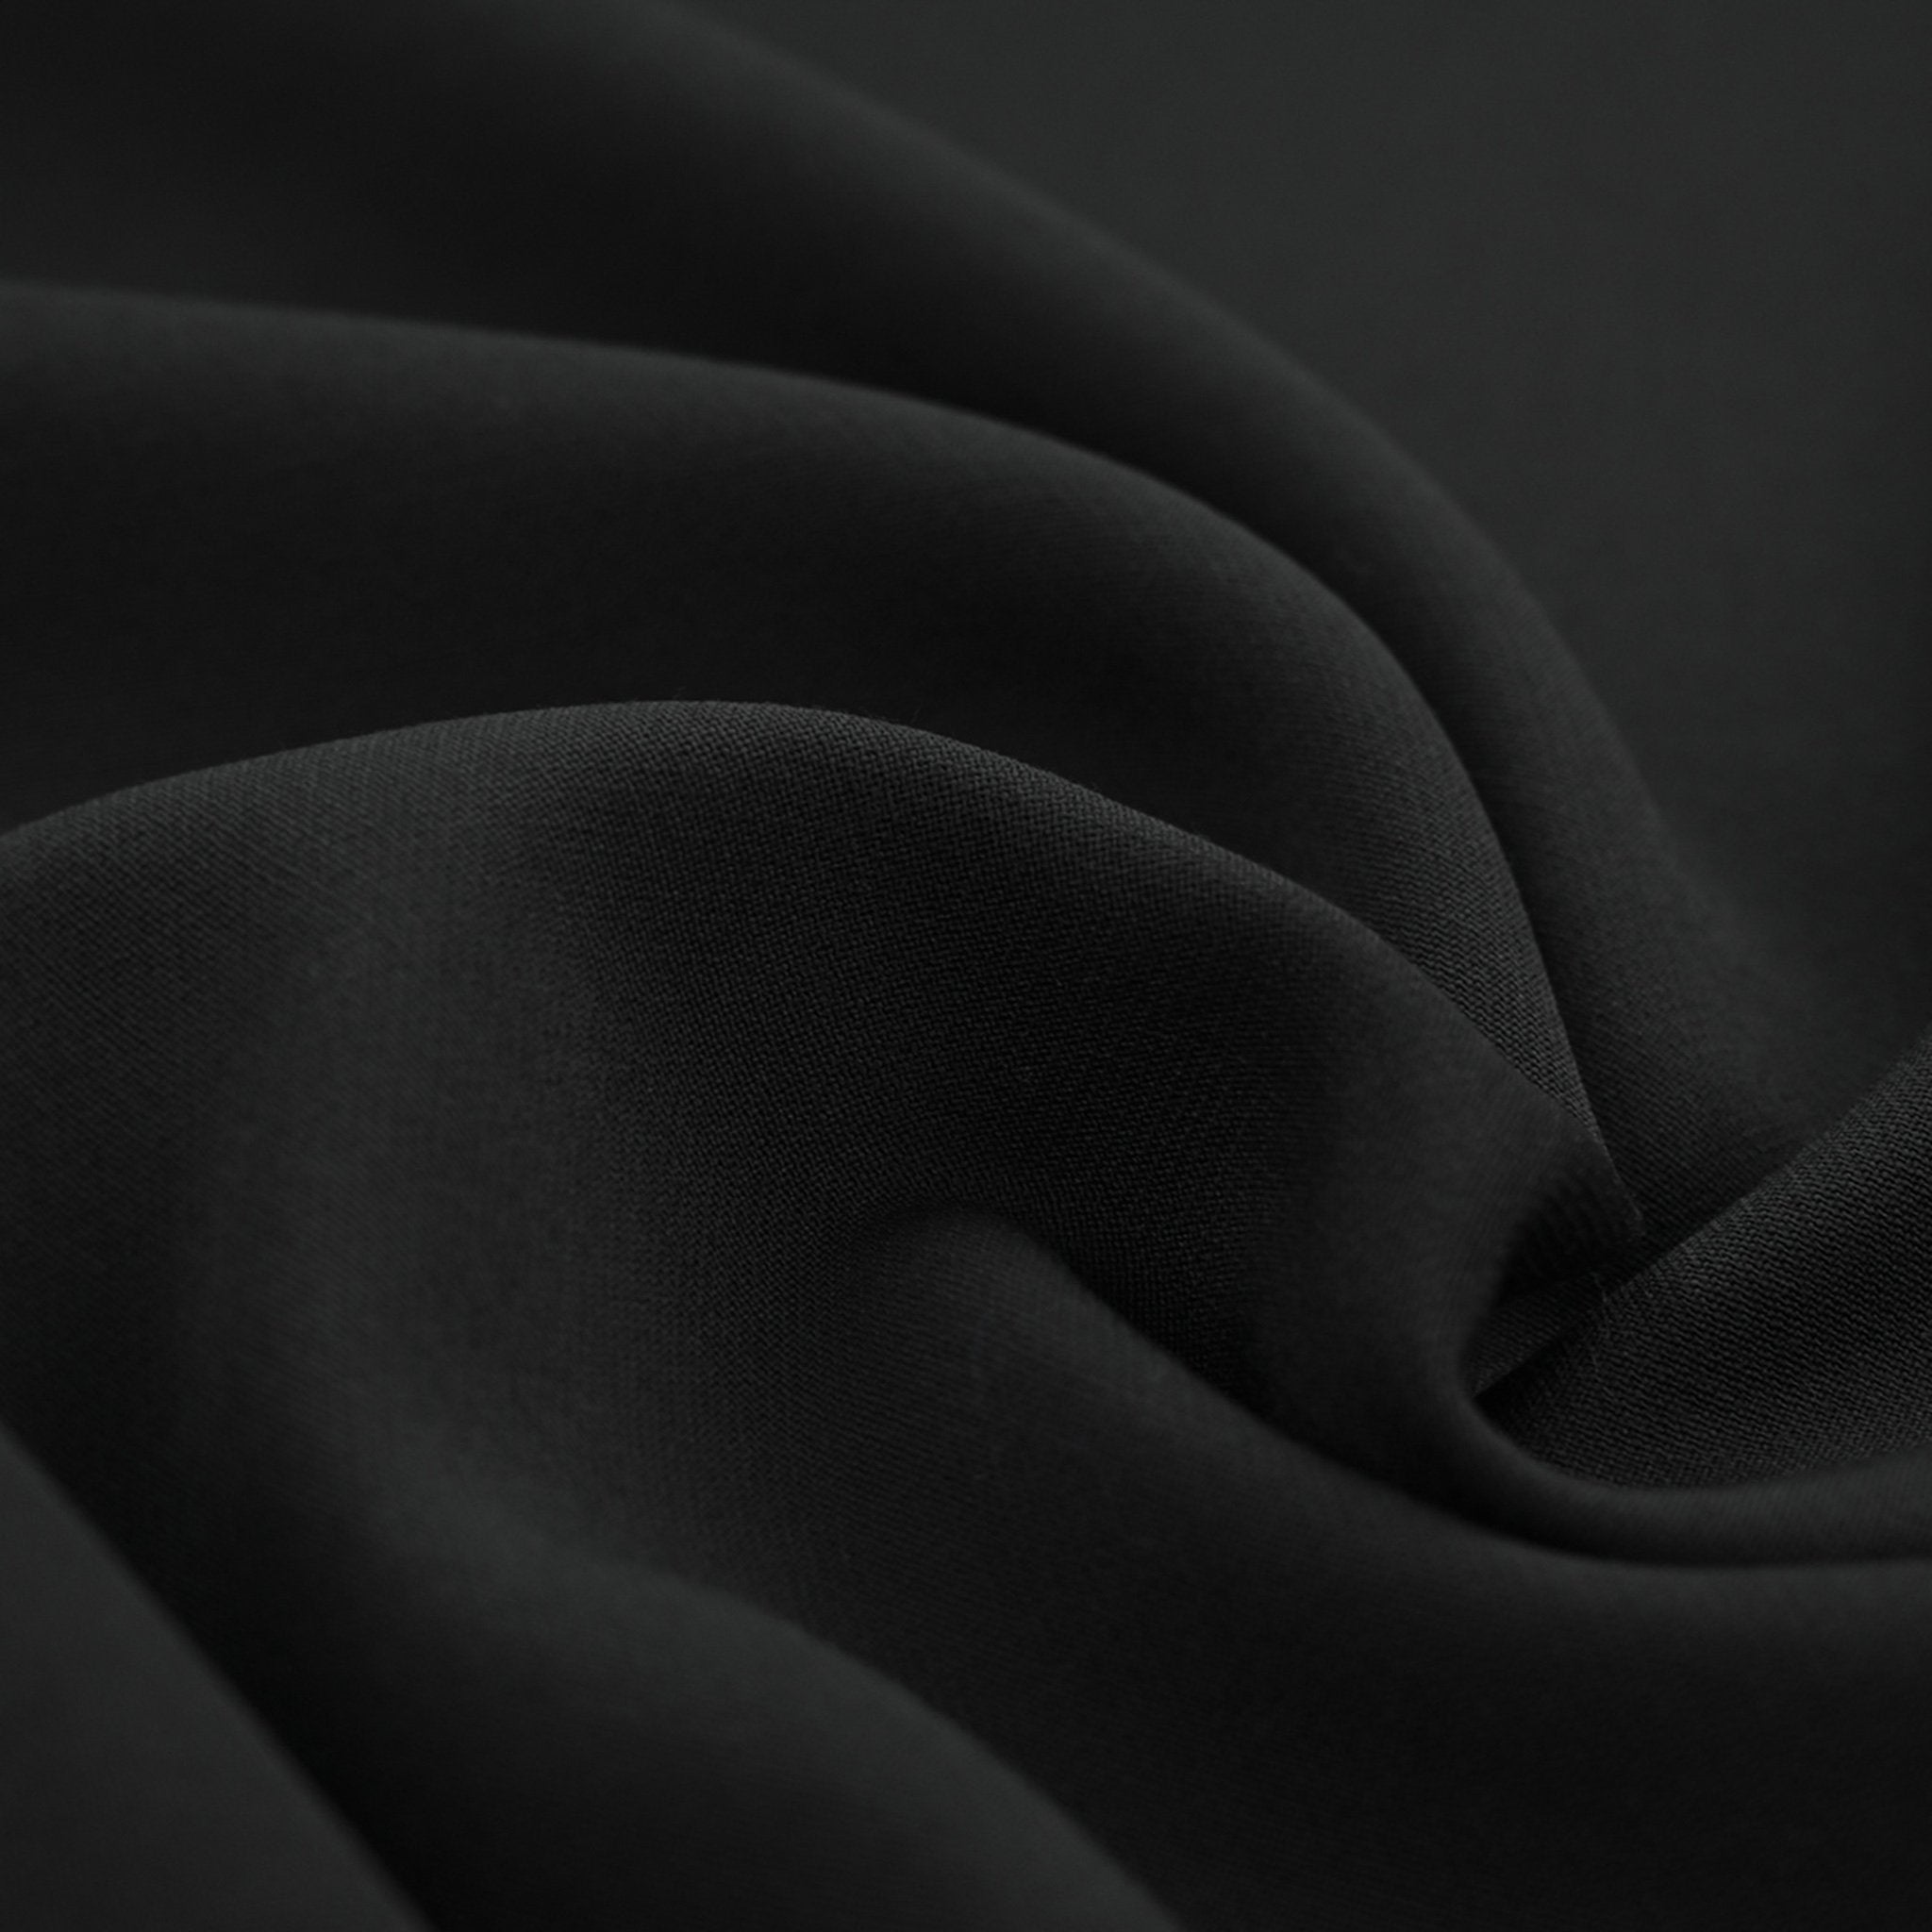 Black Woollen Crepe Fabric 97574